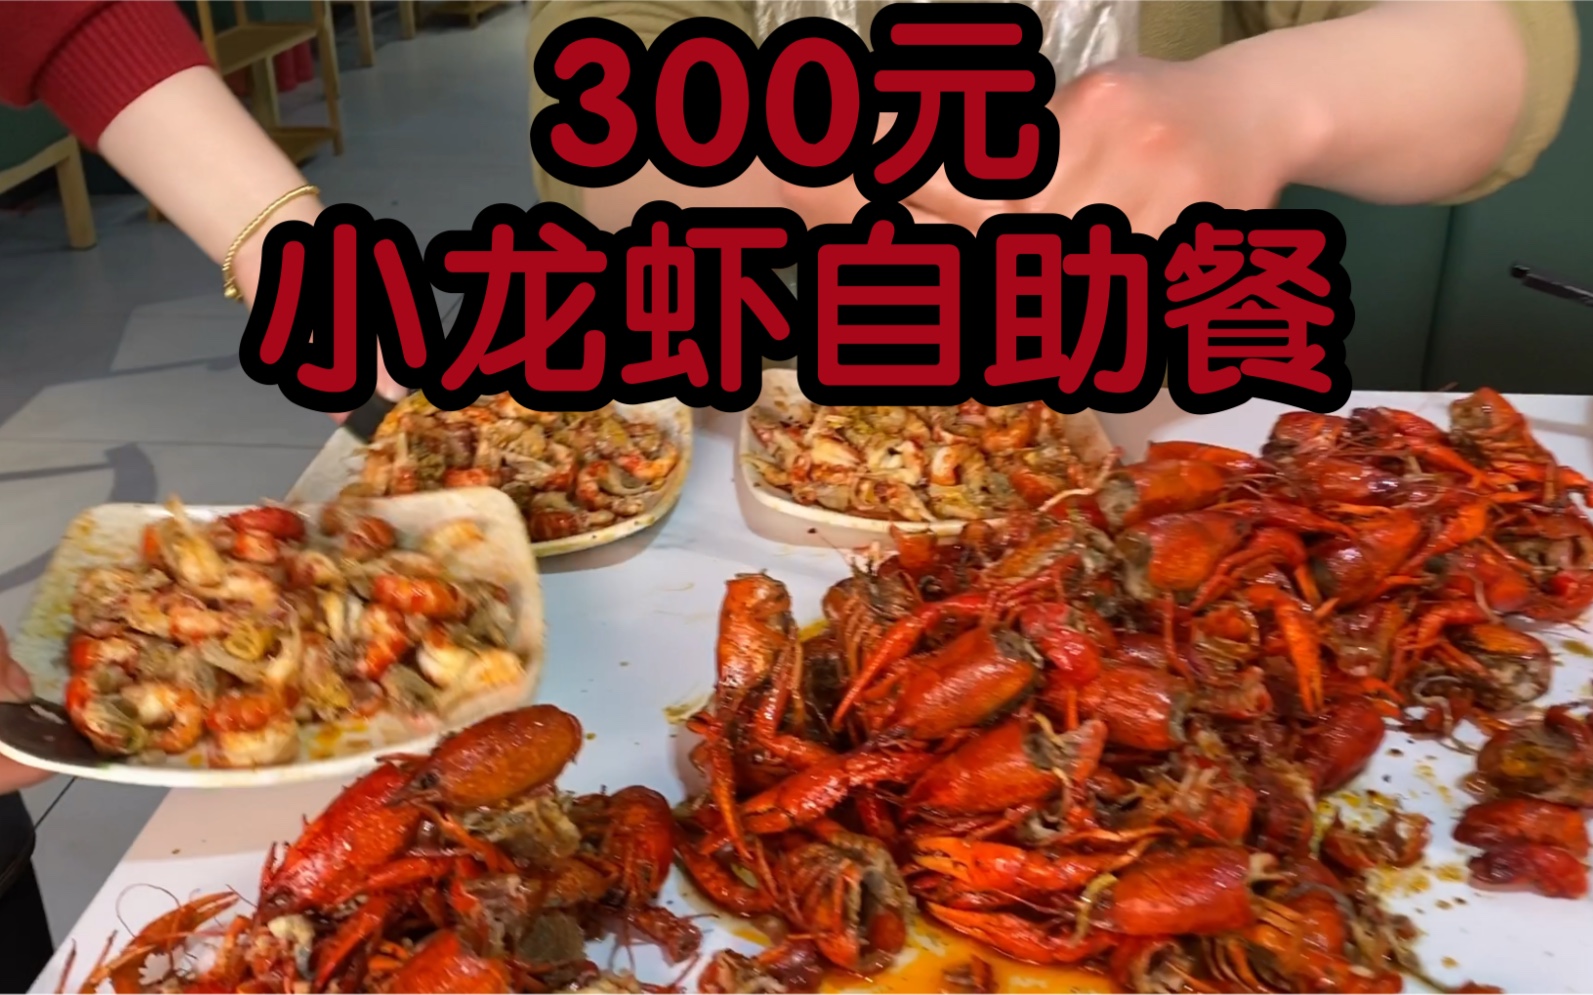 300元一个人，小龙虾自助餐，我能吃回本吗？